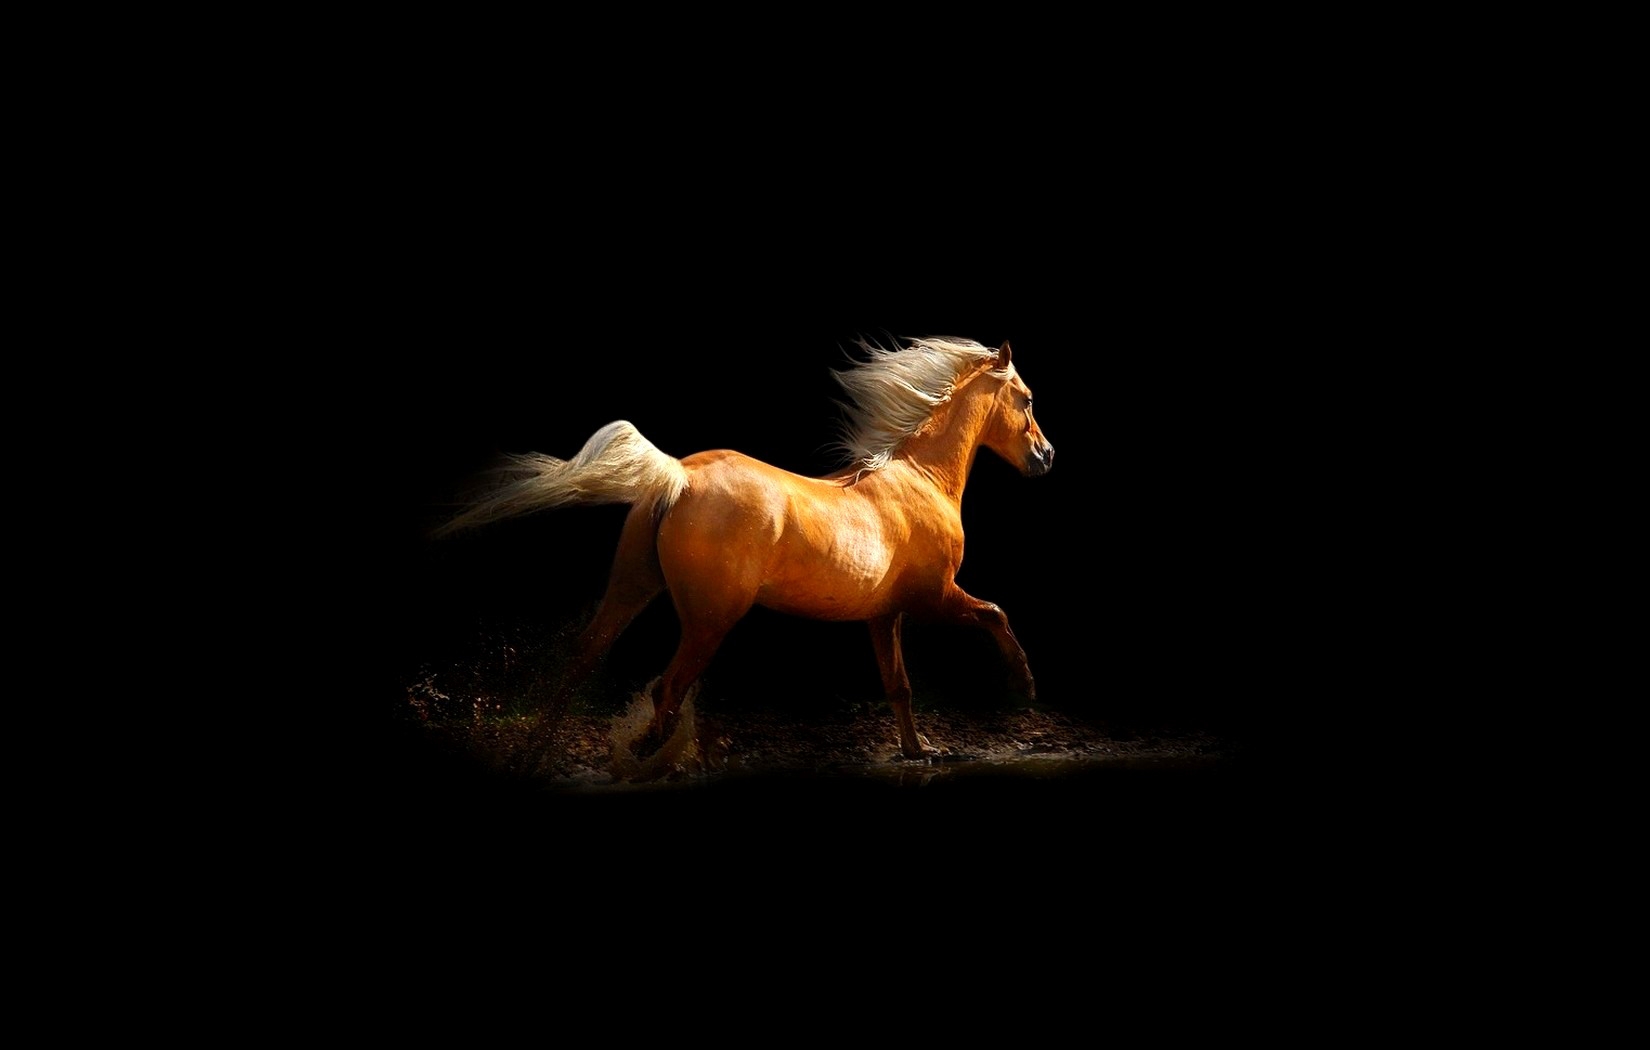 Ярко-оранжевый конь, скачущий по воде, на черном фоне